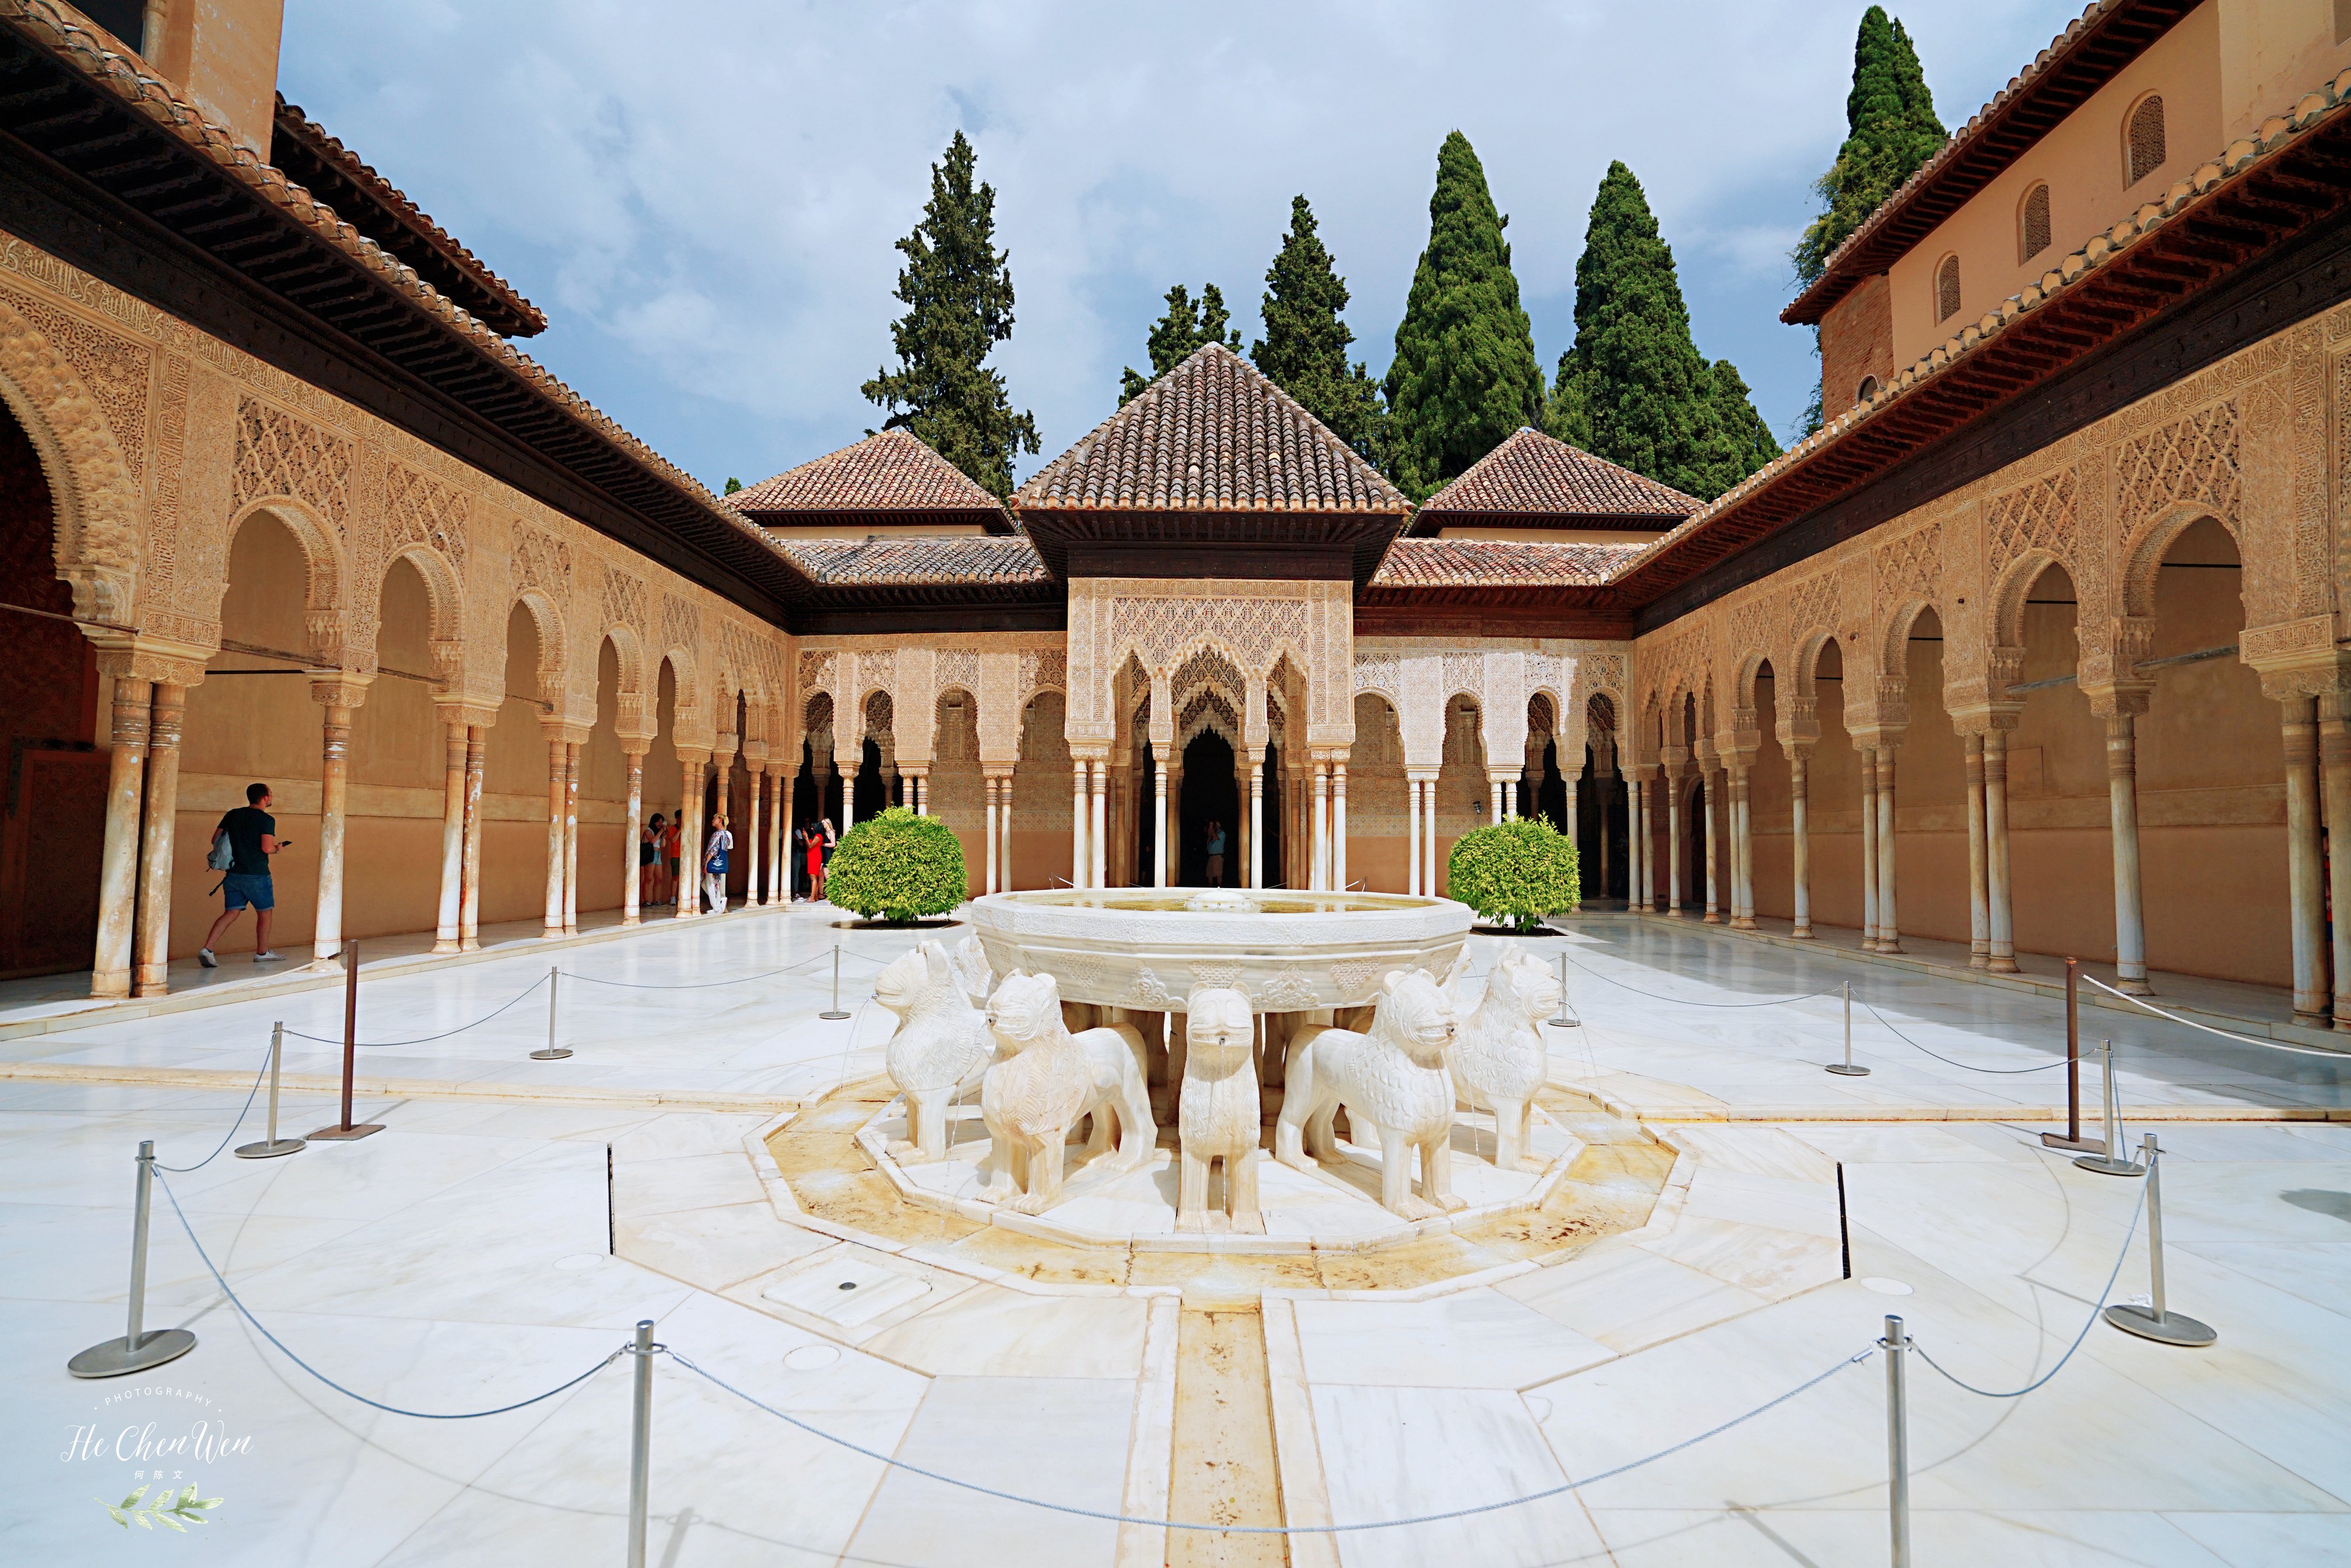 原创西班牙著名的皇宫历经千年沧桑被誉为世界奇迹游客慕名而来